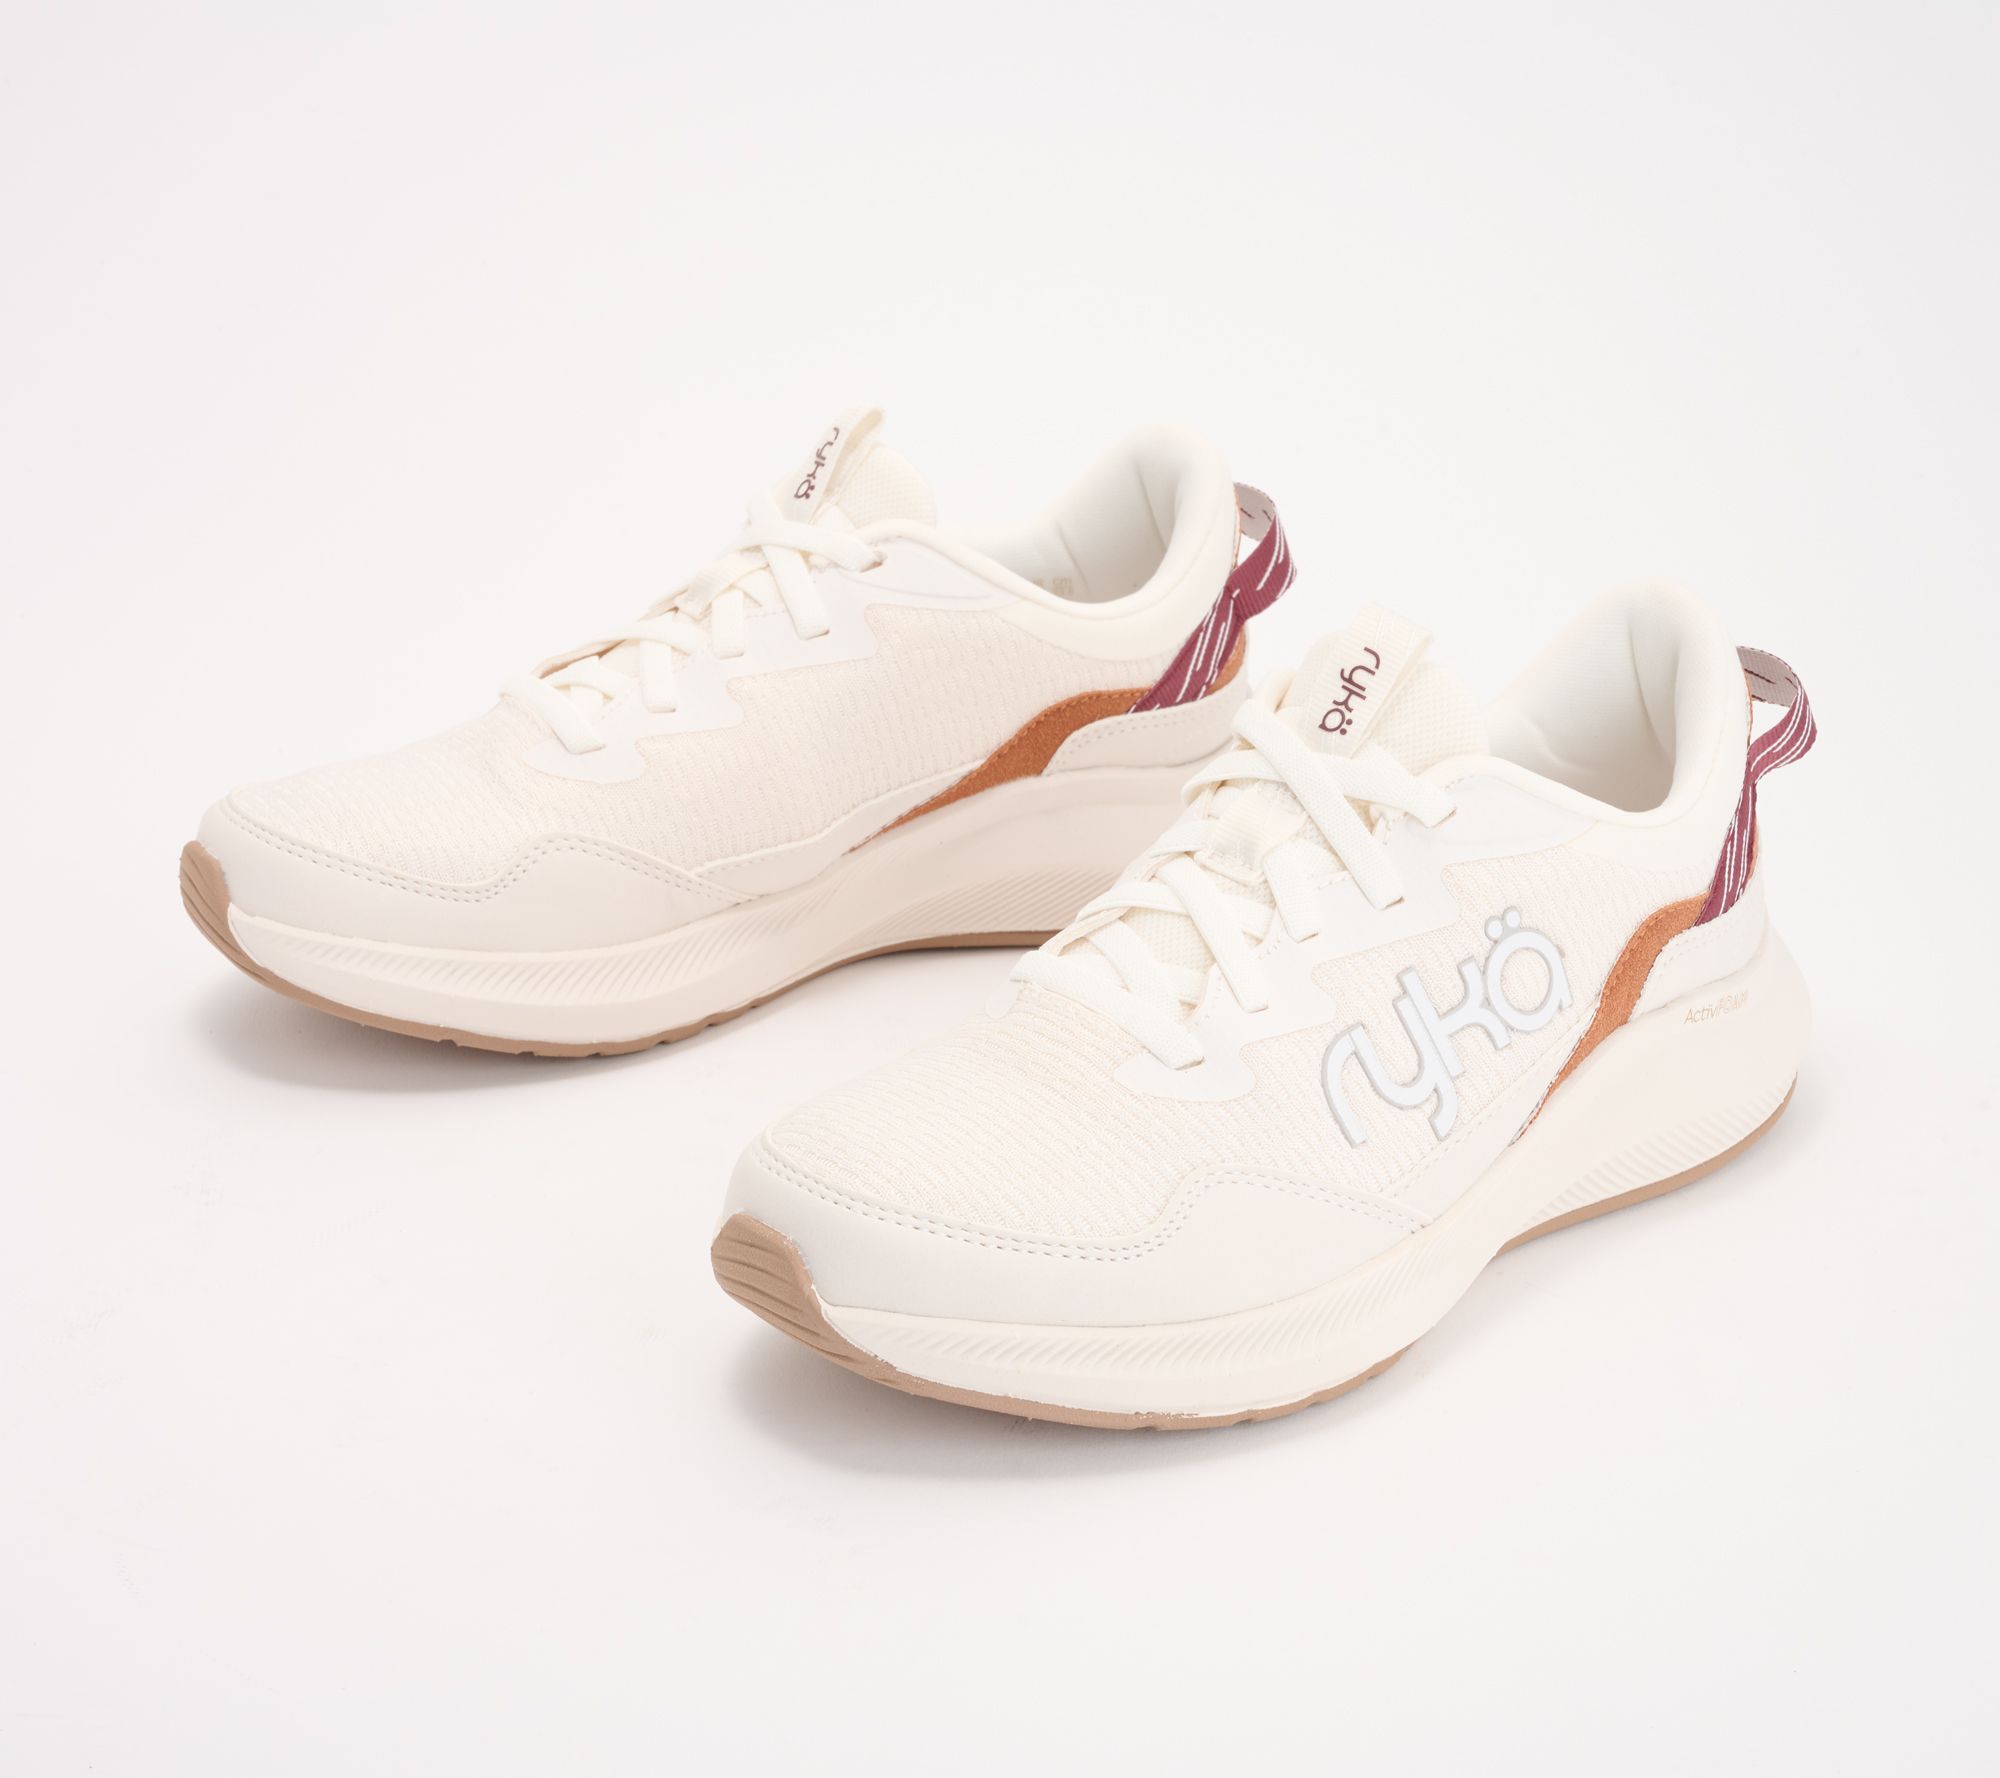 Aqua Shoes | Womens Aqua Faux White Leather Sparkle Tennis Shoes Size 7.5 | Color: White | Size: 7.5 | Drobison9876's Closet